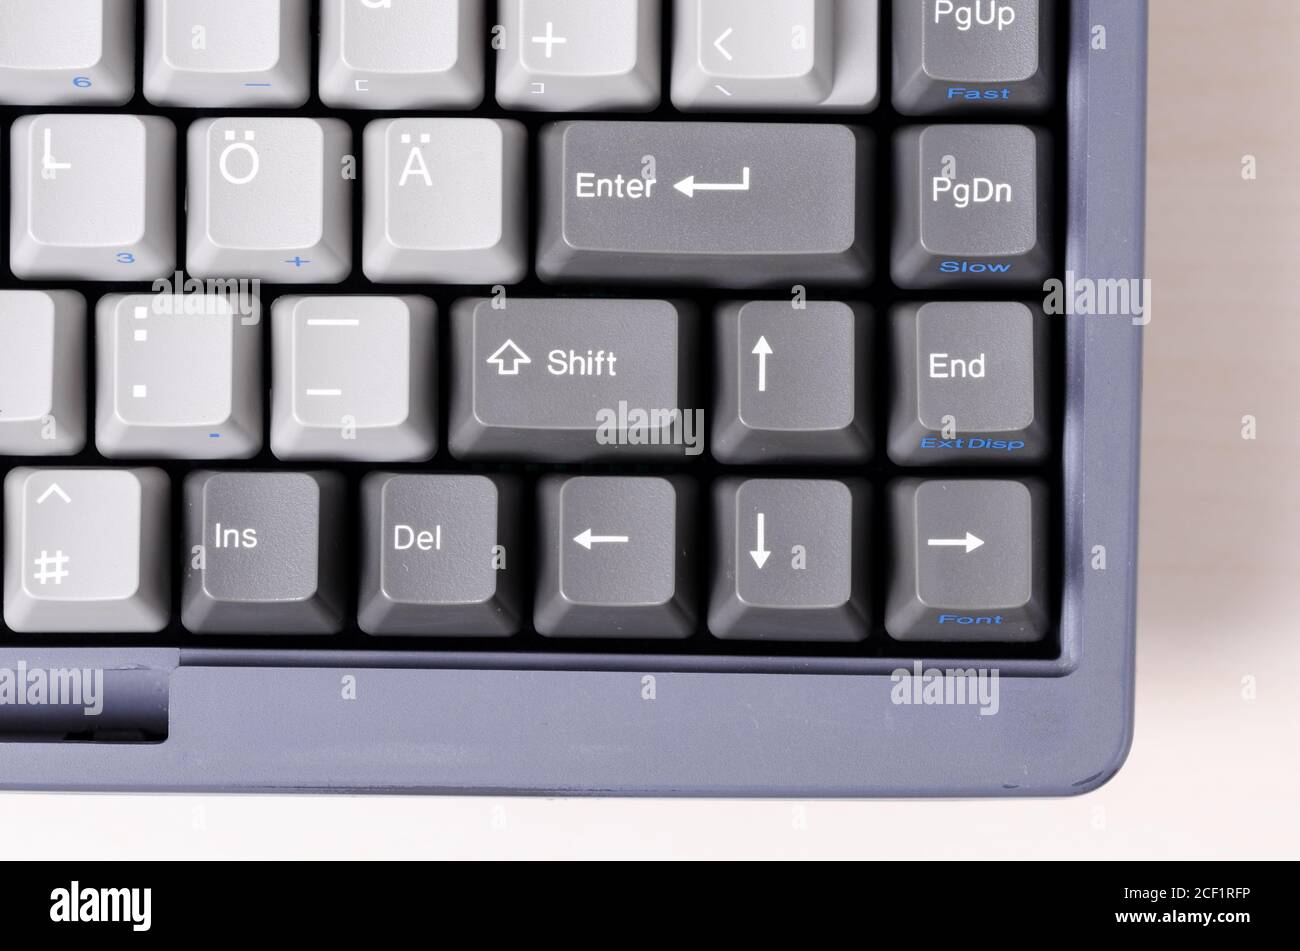 Vintage, veraltet, alten PC-Computer Laptop-Tastatur, close-up. Makro, graue Shift-und Enter-Tasten mit Symbolen, Pfeile, drinnen Studio Stockfoto